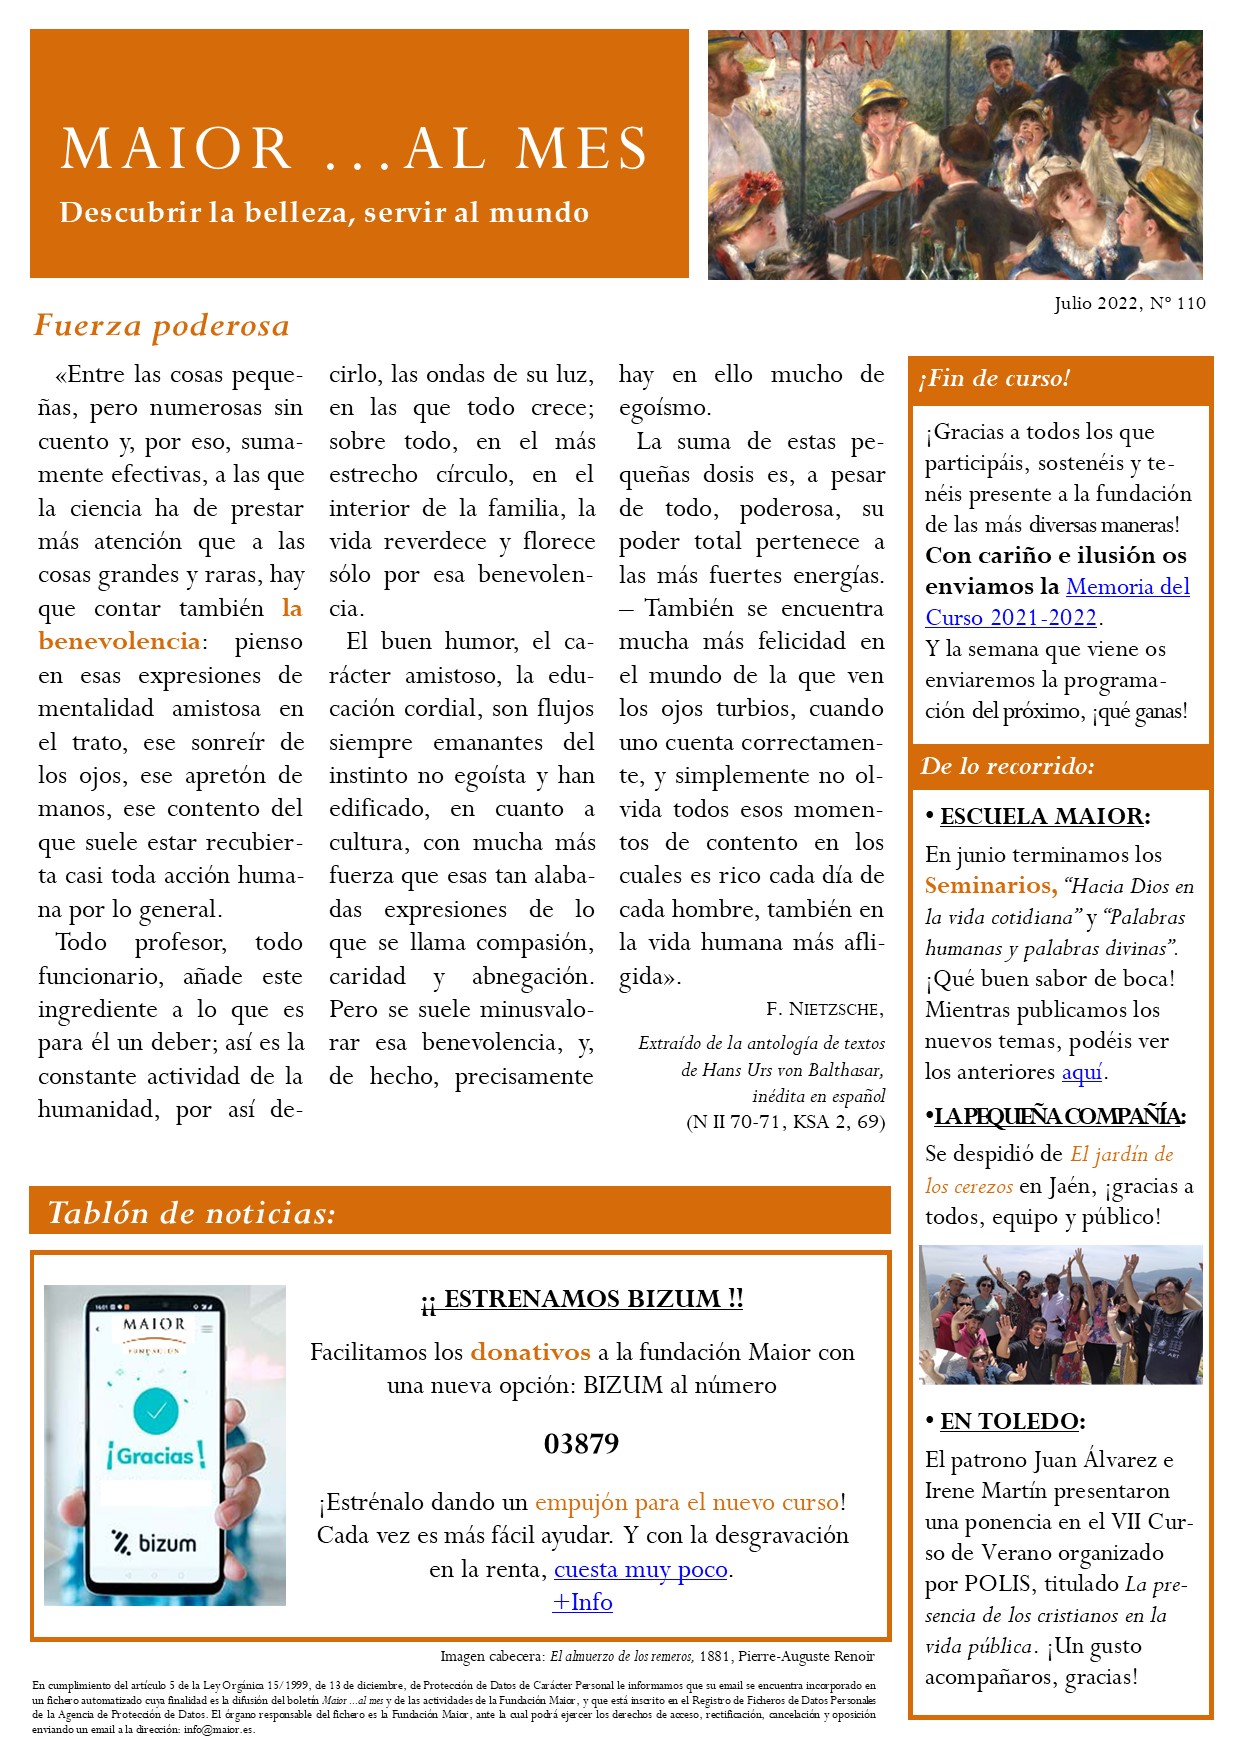 Boletín mensual de noticias y actividades de la Fundación Maior. Edición de julio 2022